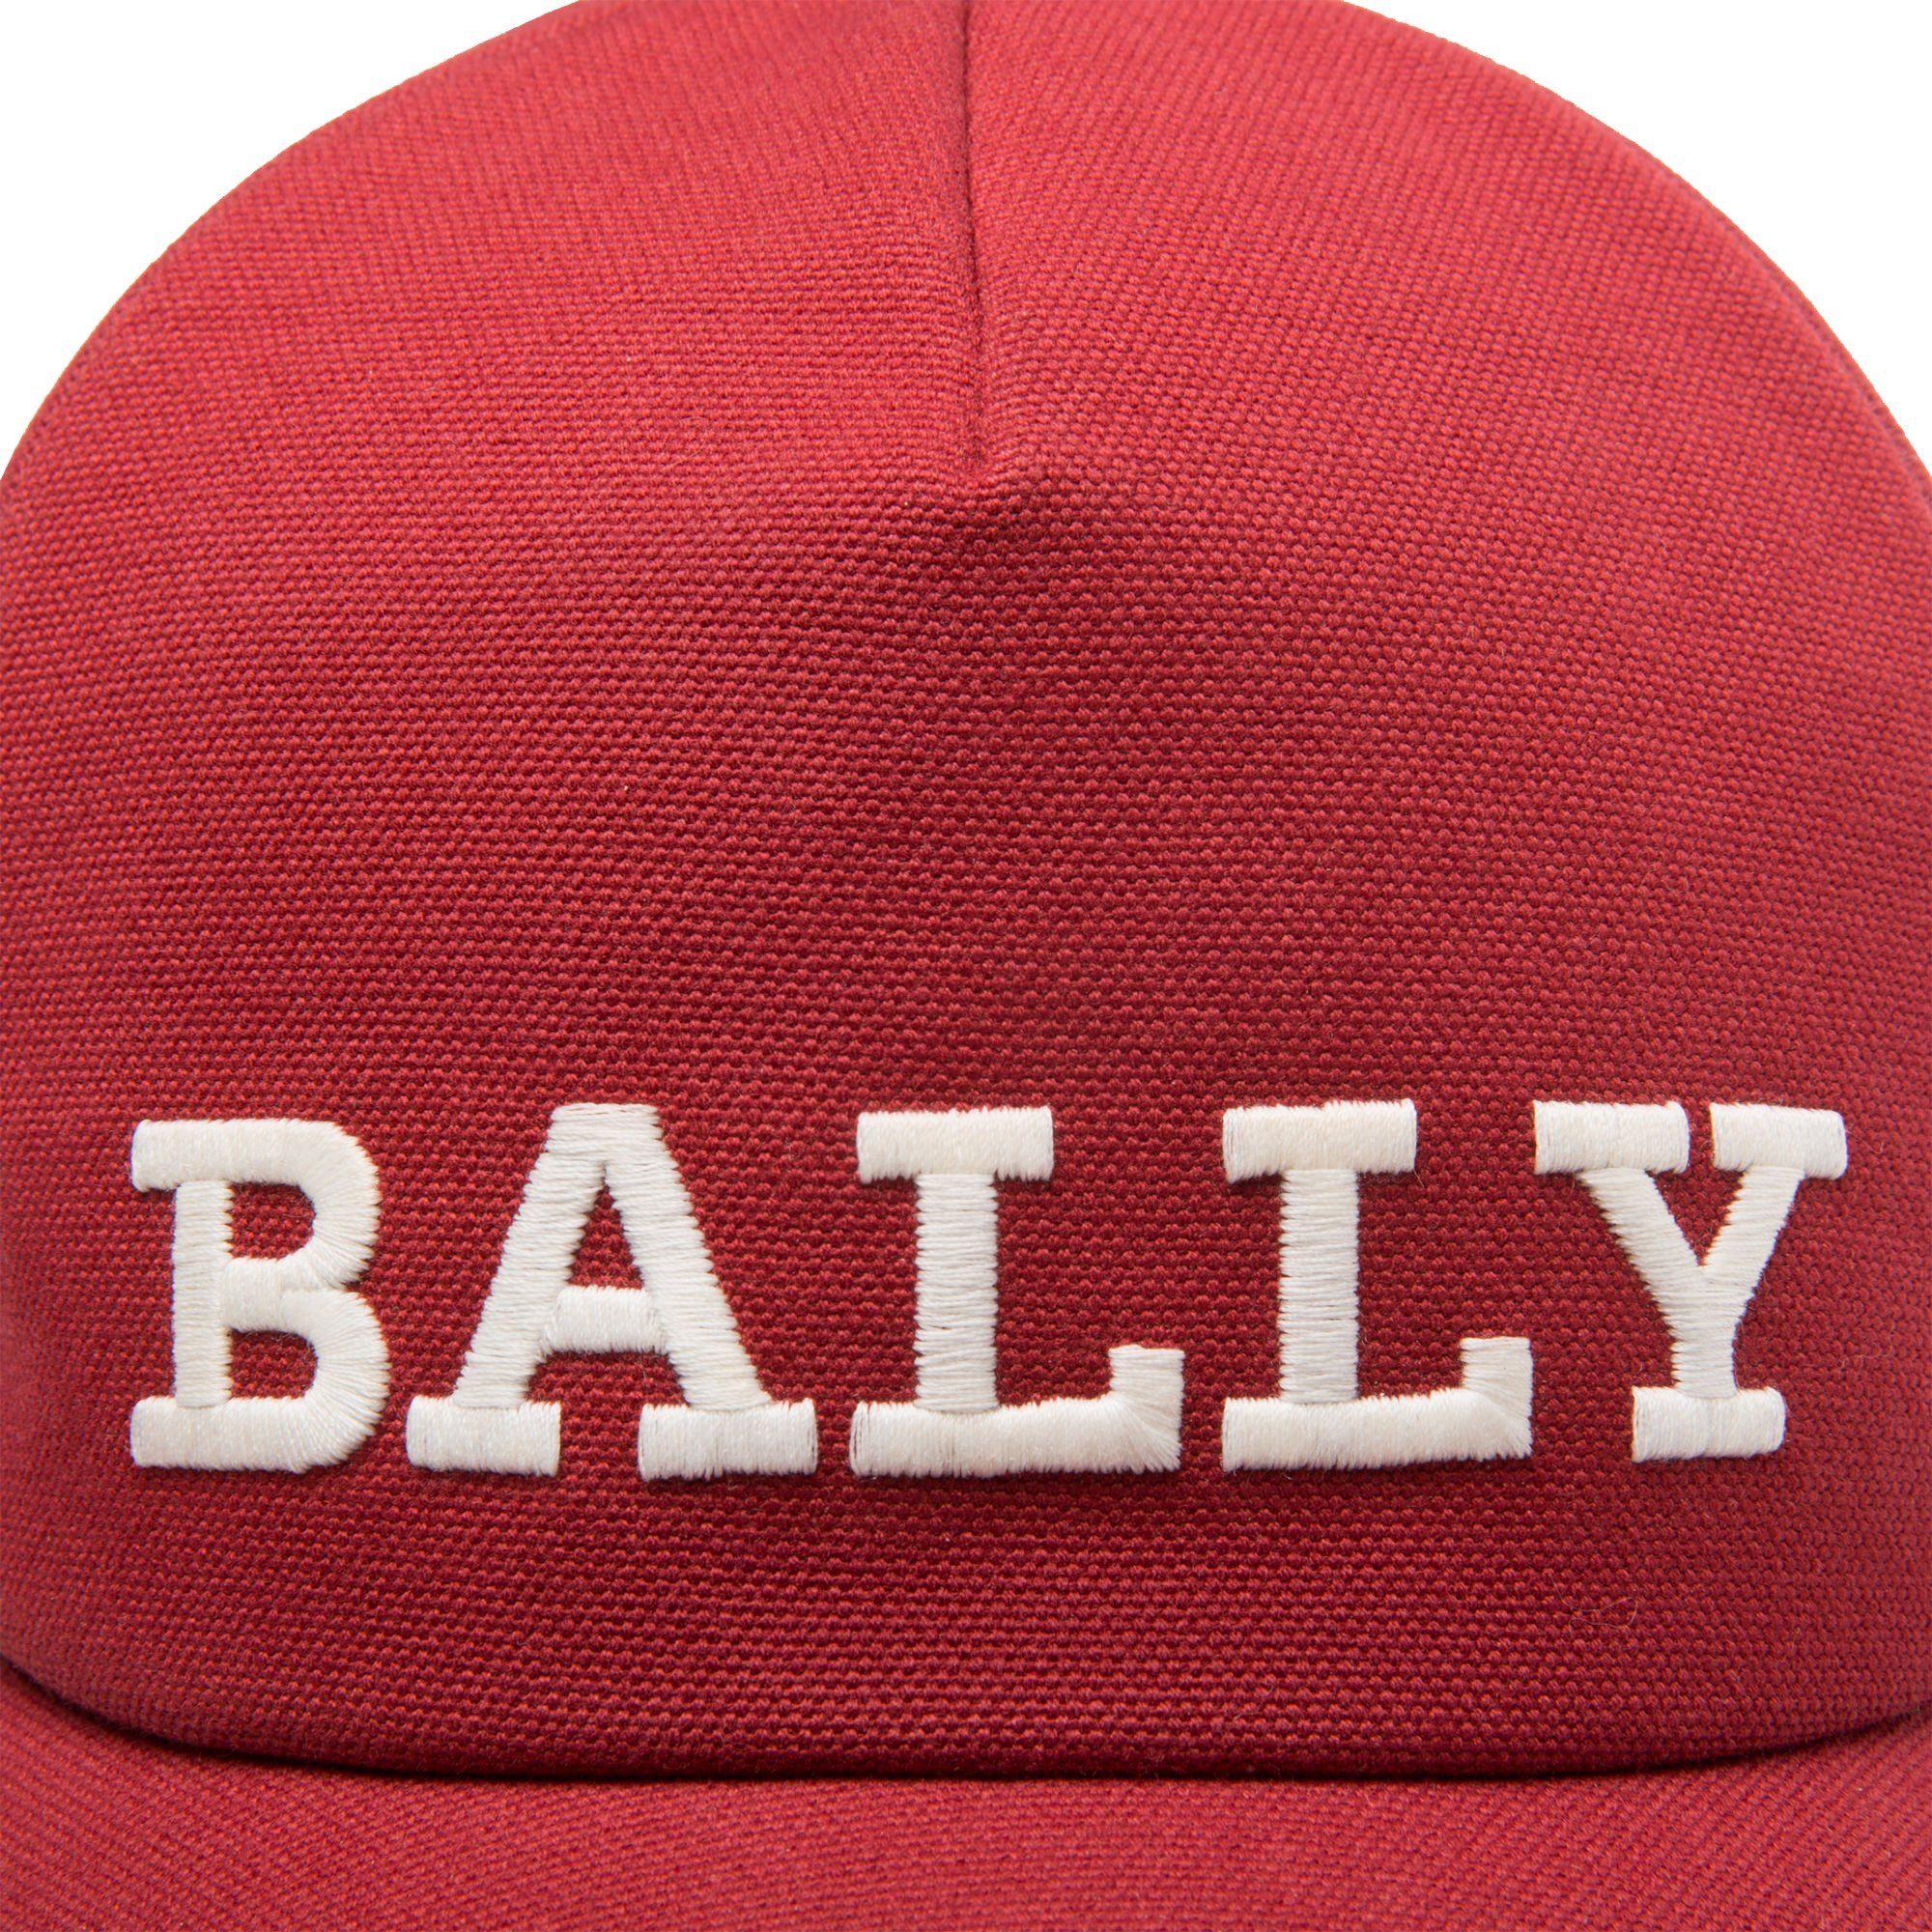 Bally Logo - Bally. Logo Baseball Cap